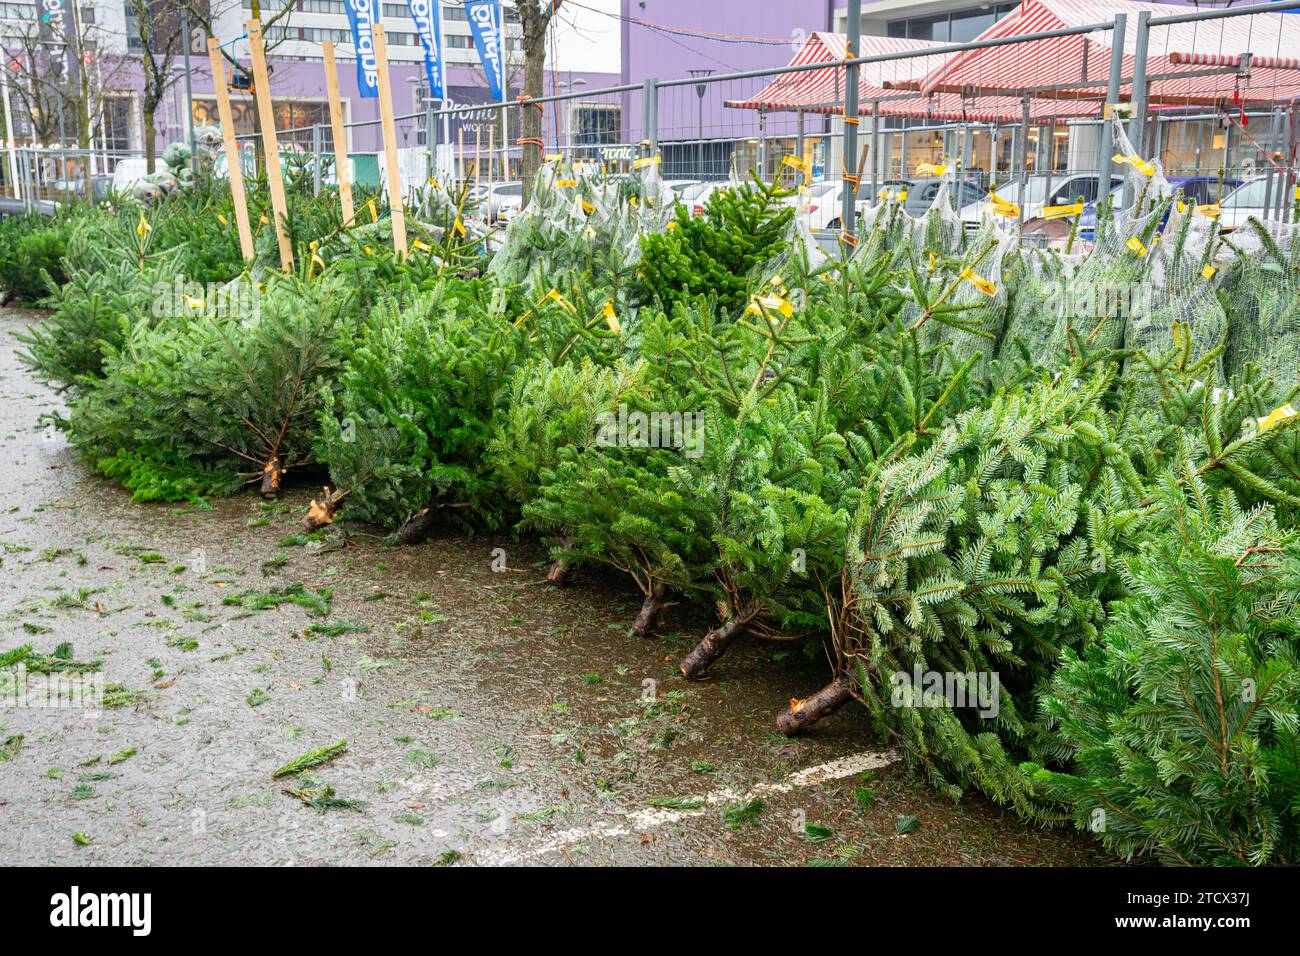 Tagliate gli abeti Nordmann in una piazza per la vendita di alberi di Natale a Gouda, Paesi Bassi Foto Stock